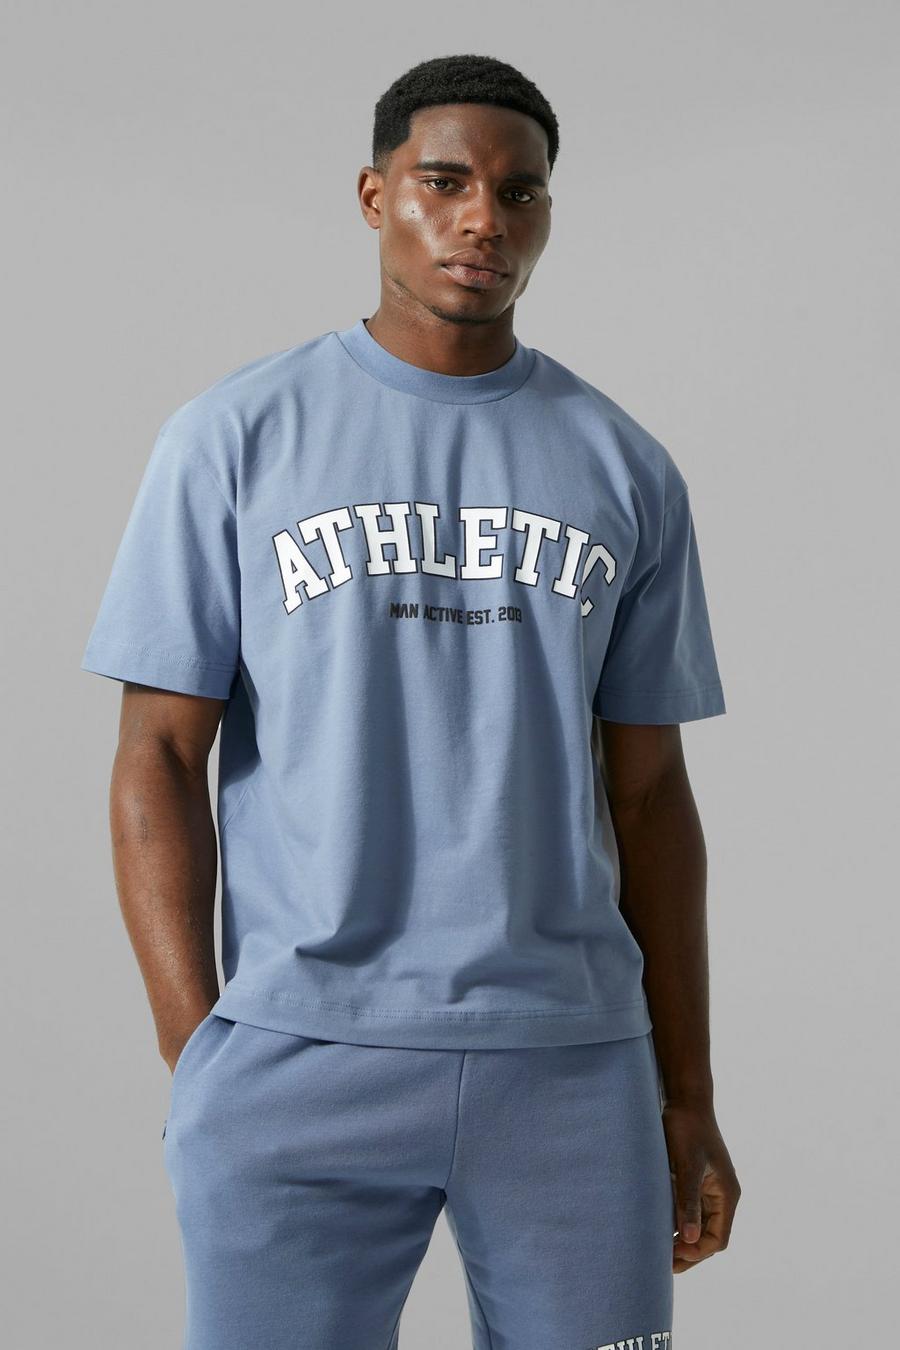 Man Active kastiges Gym Athletic T-Shirt, Dusty blue blau